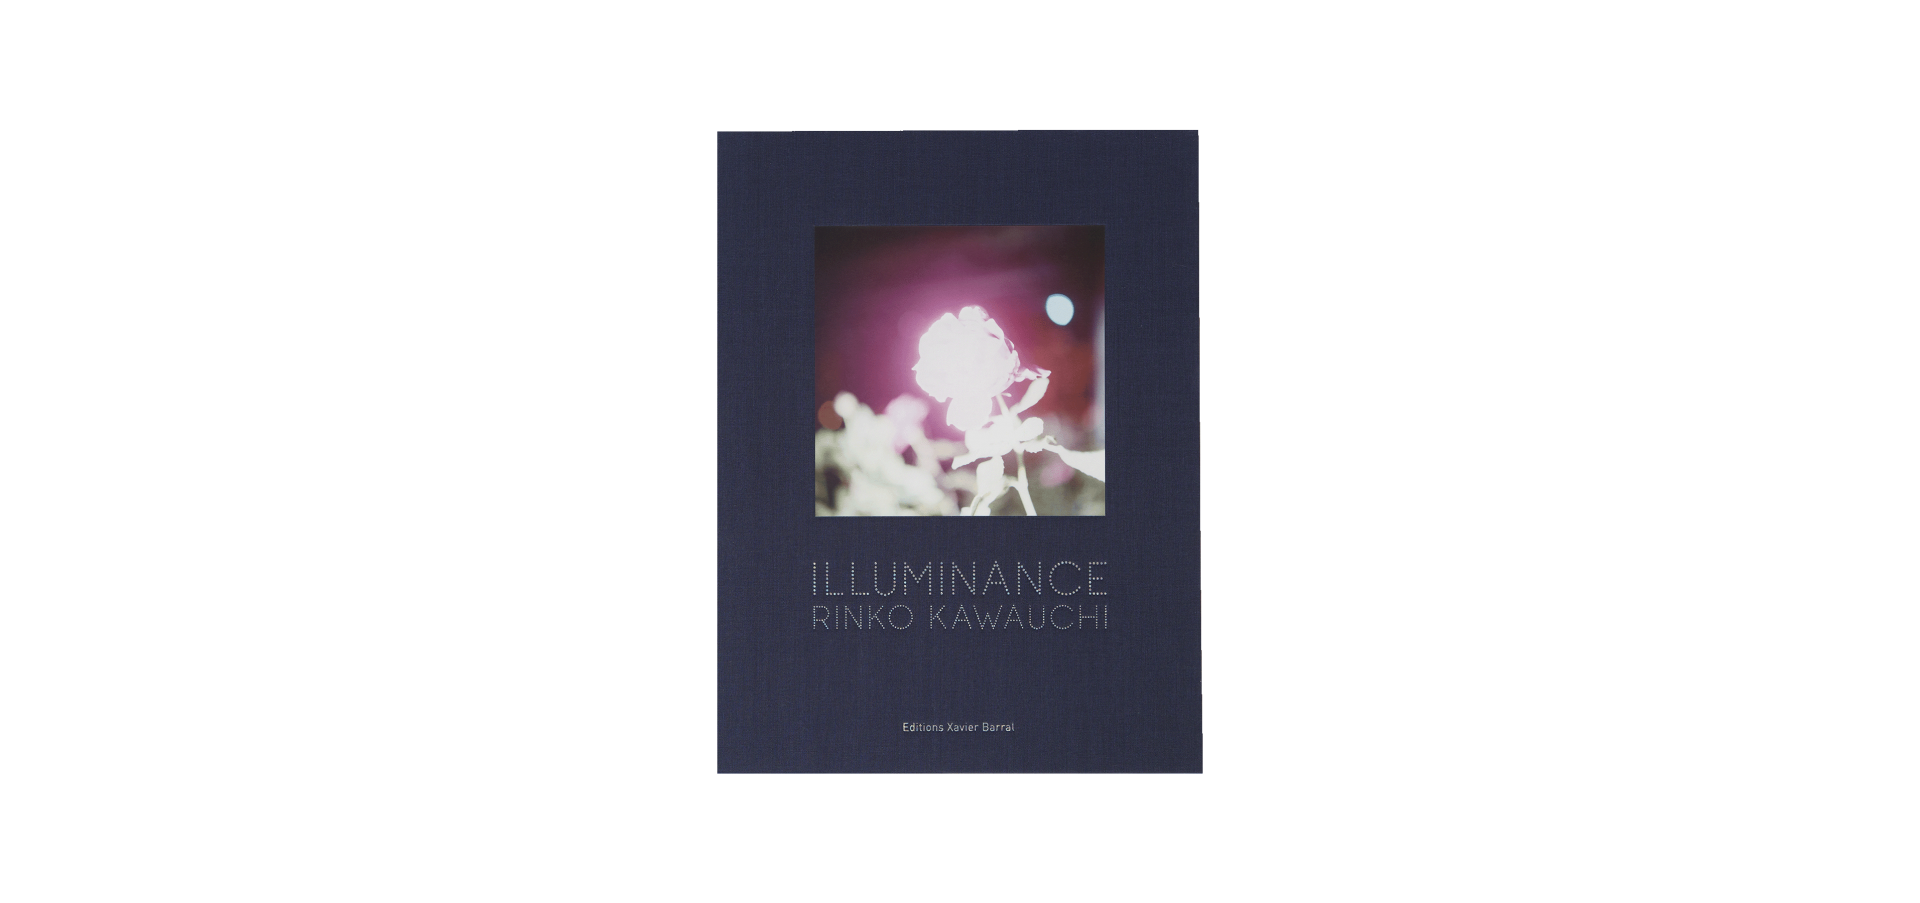 Illuminance